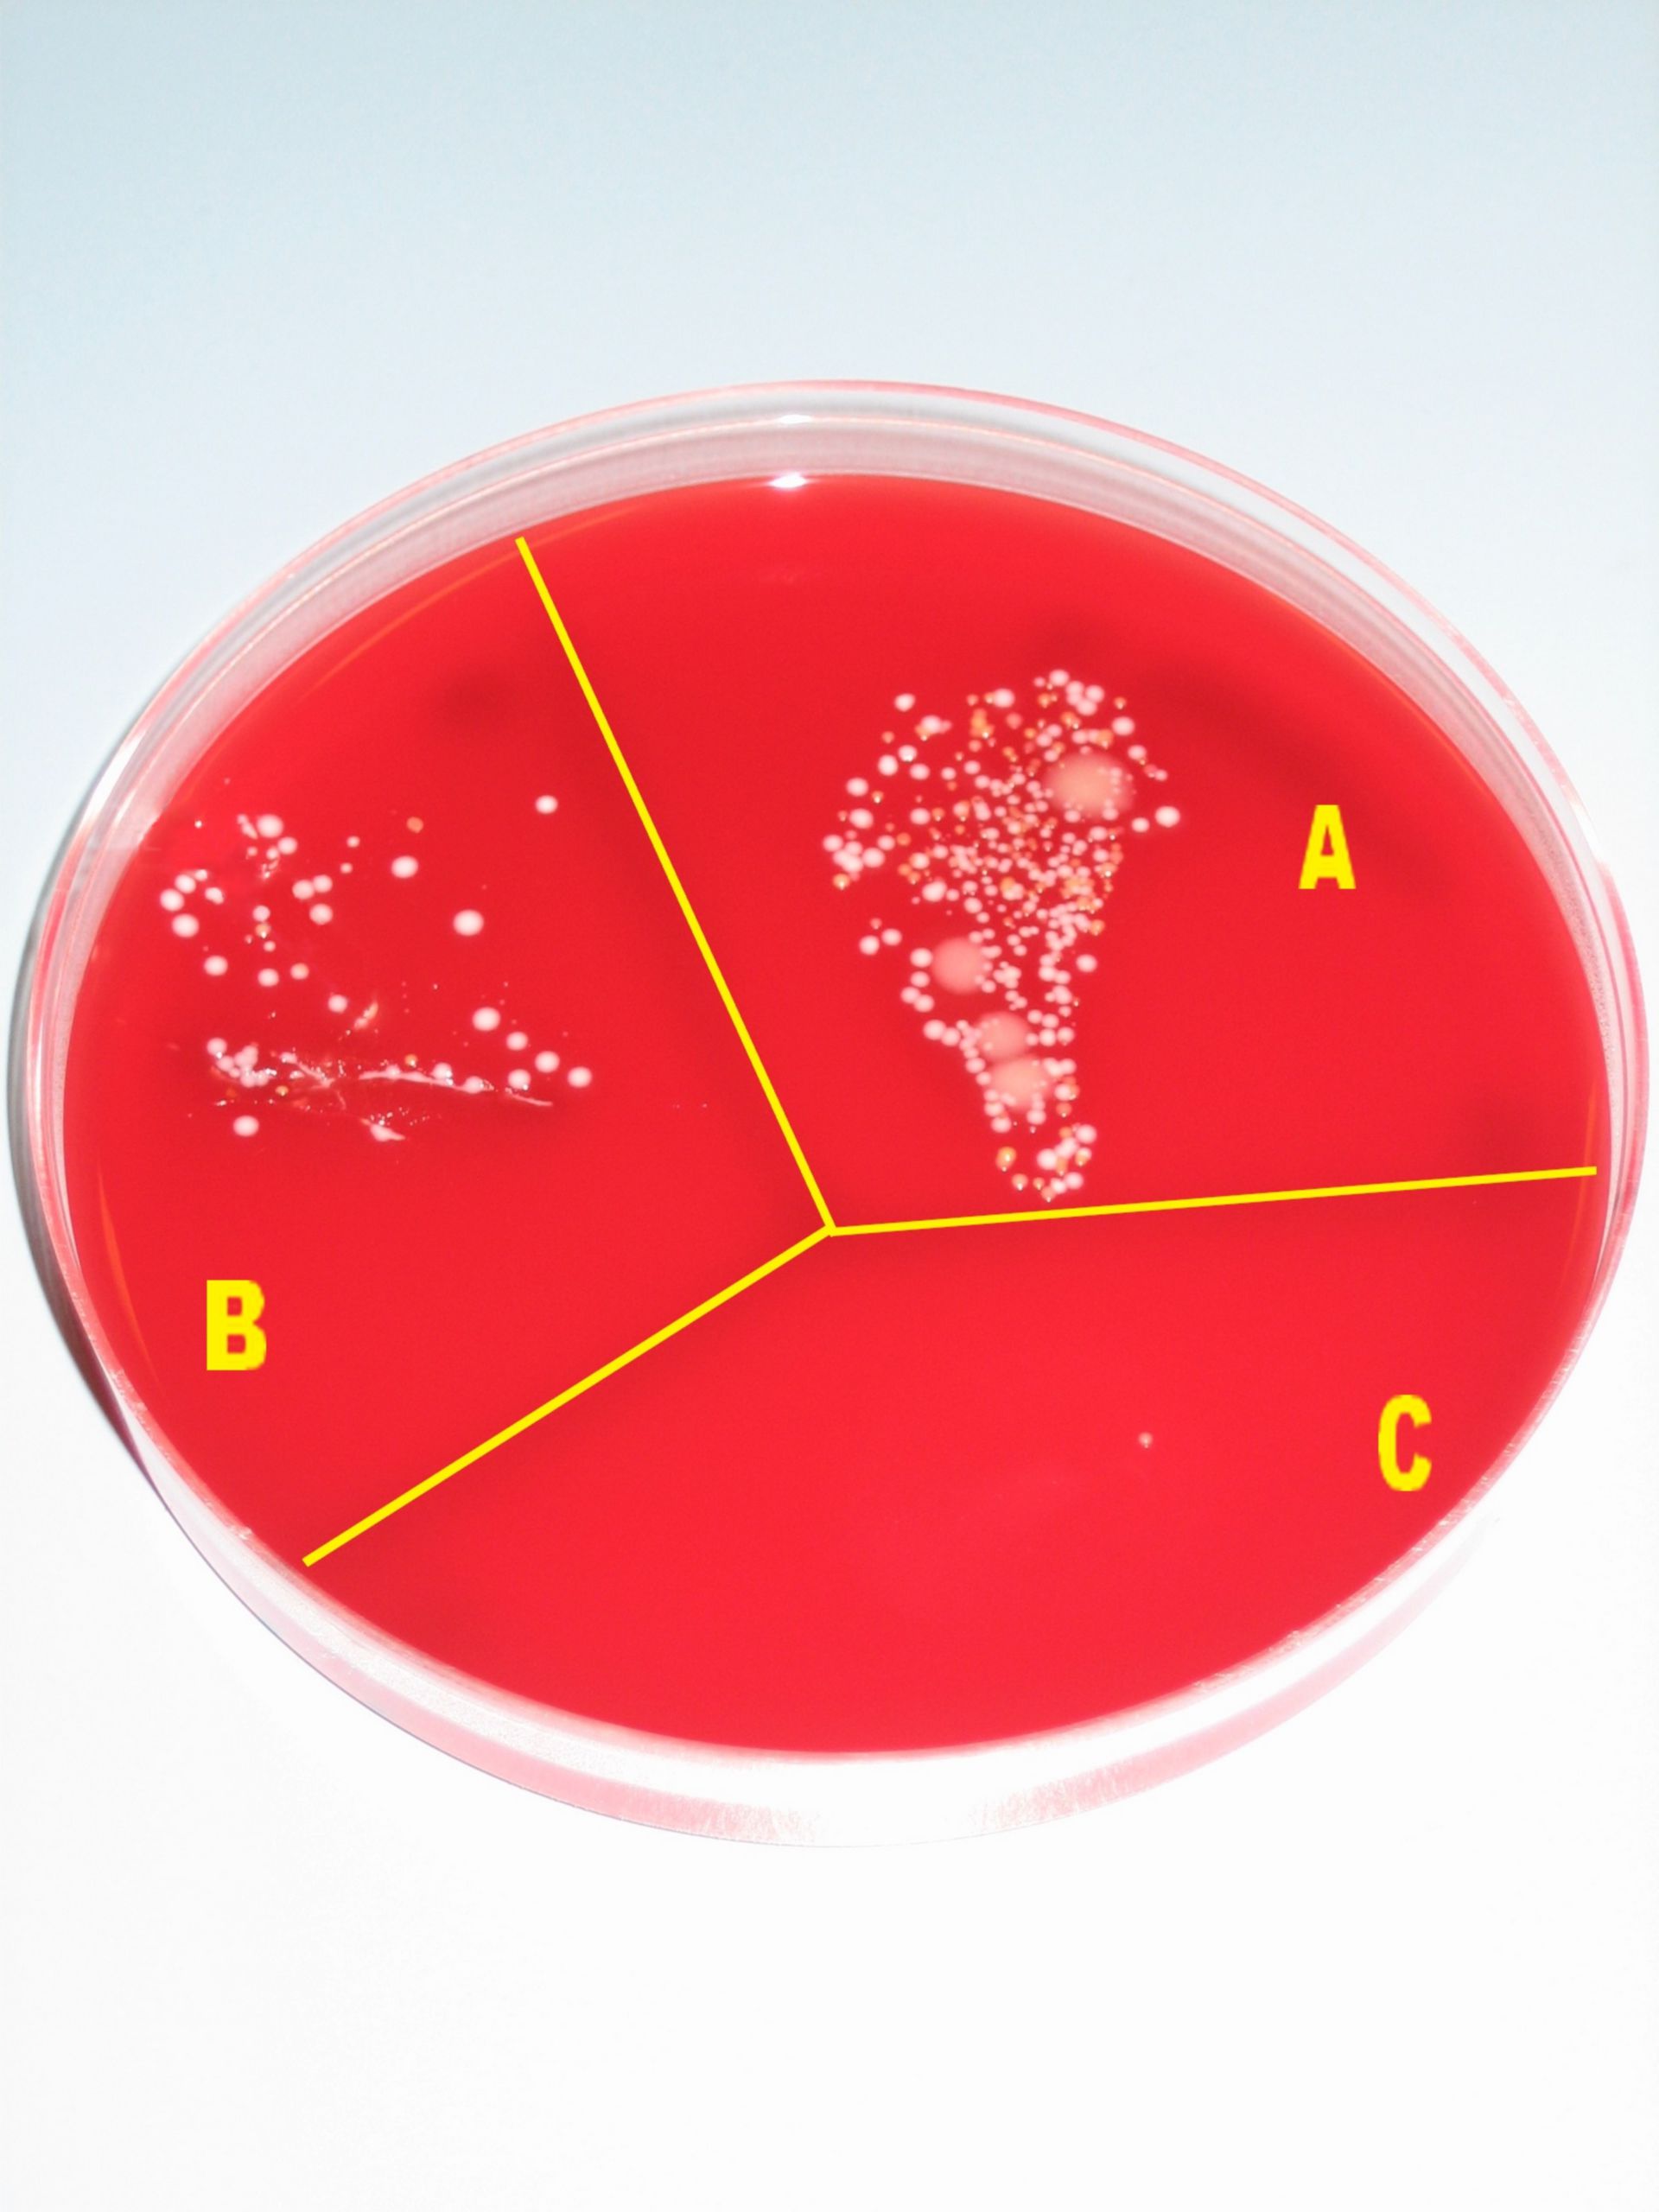 Blood agar plate